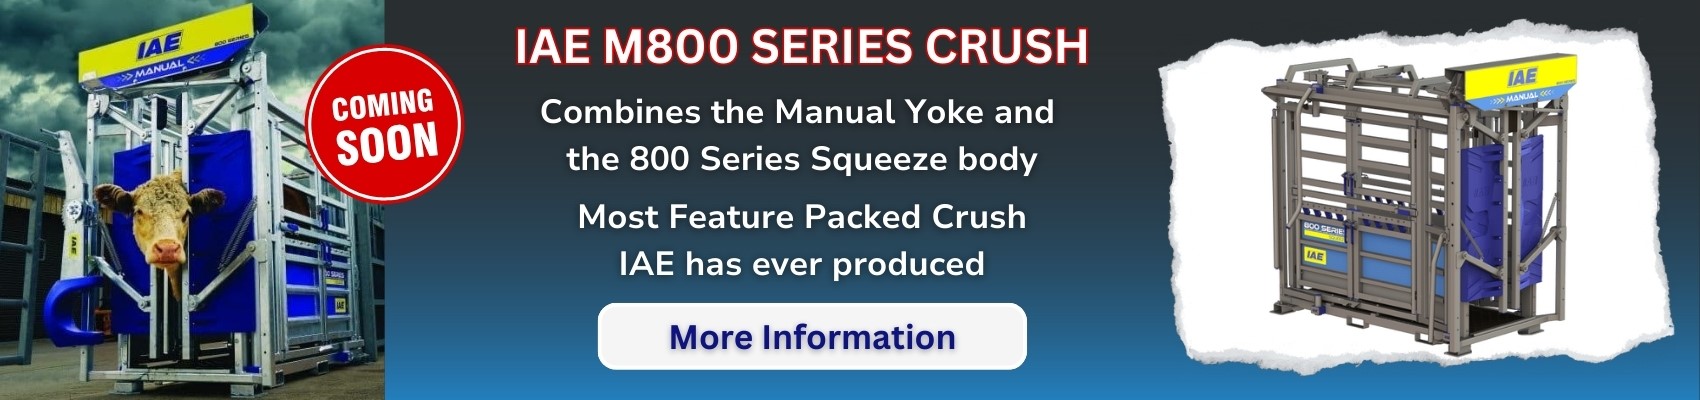 IAE M800 Series Crush